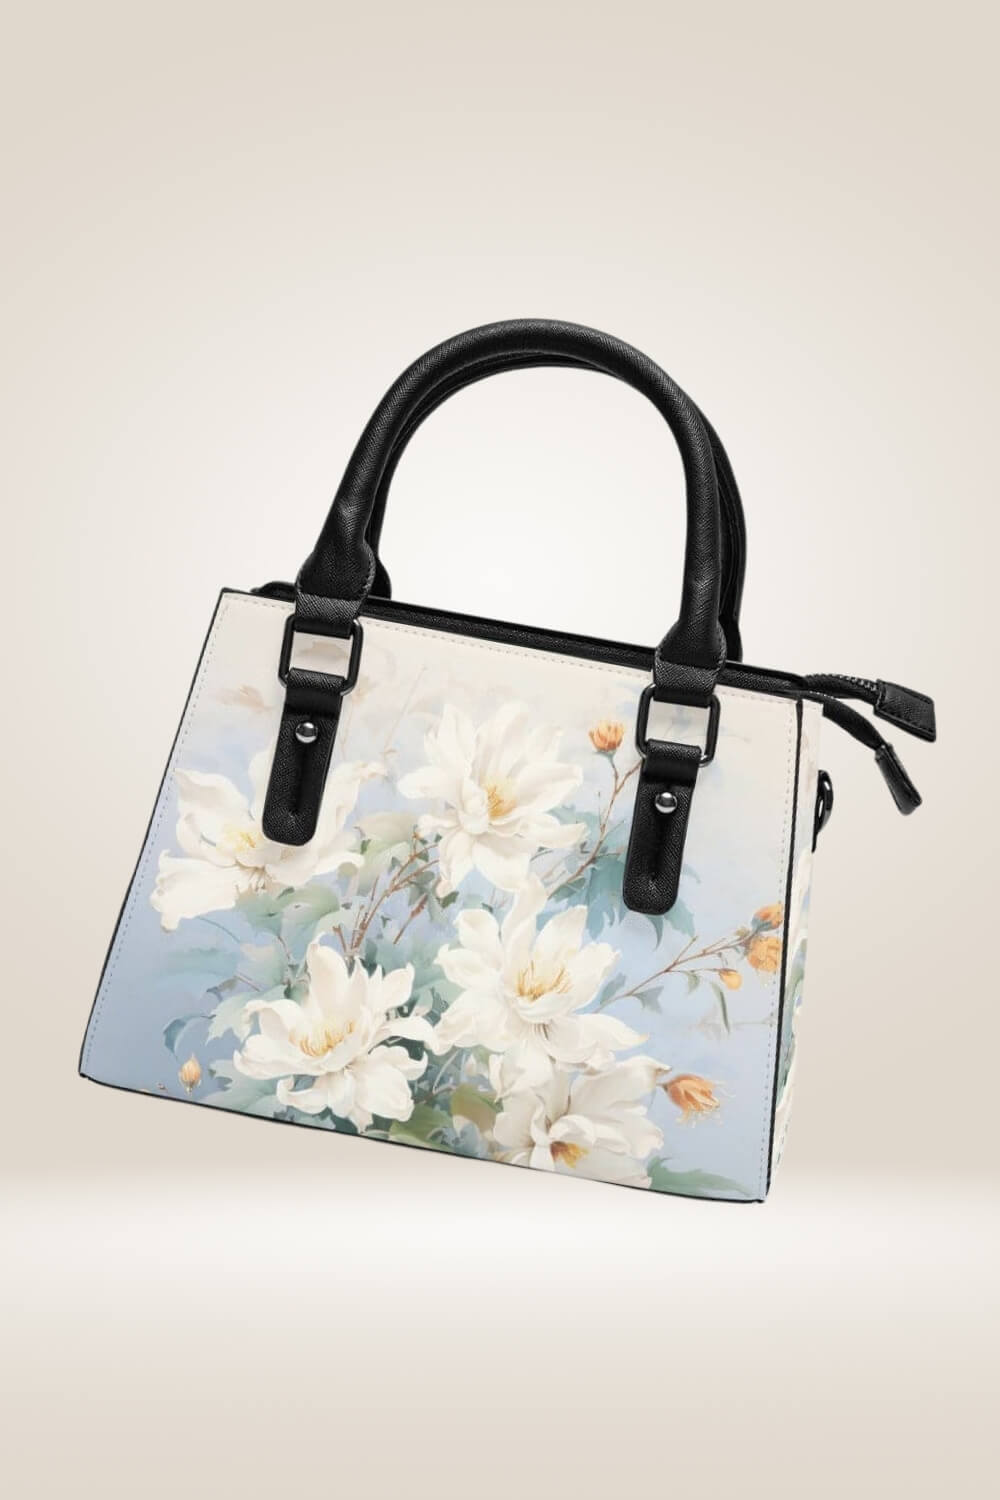 White Flowers Blue Satchel Bag - TGC Boutique - Satchel Handbag